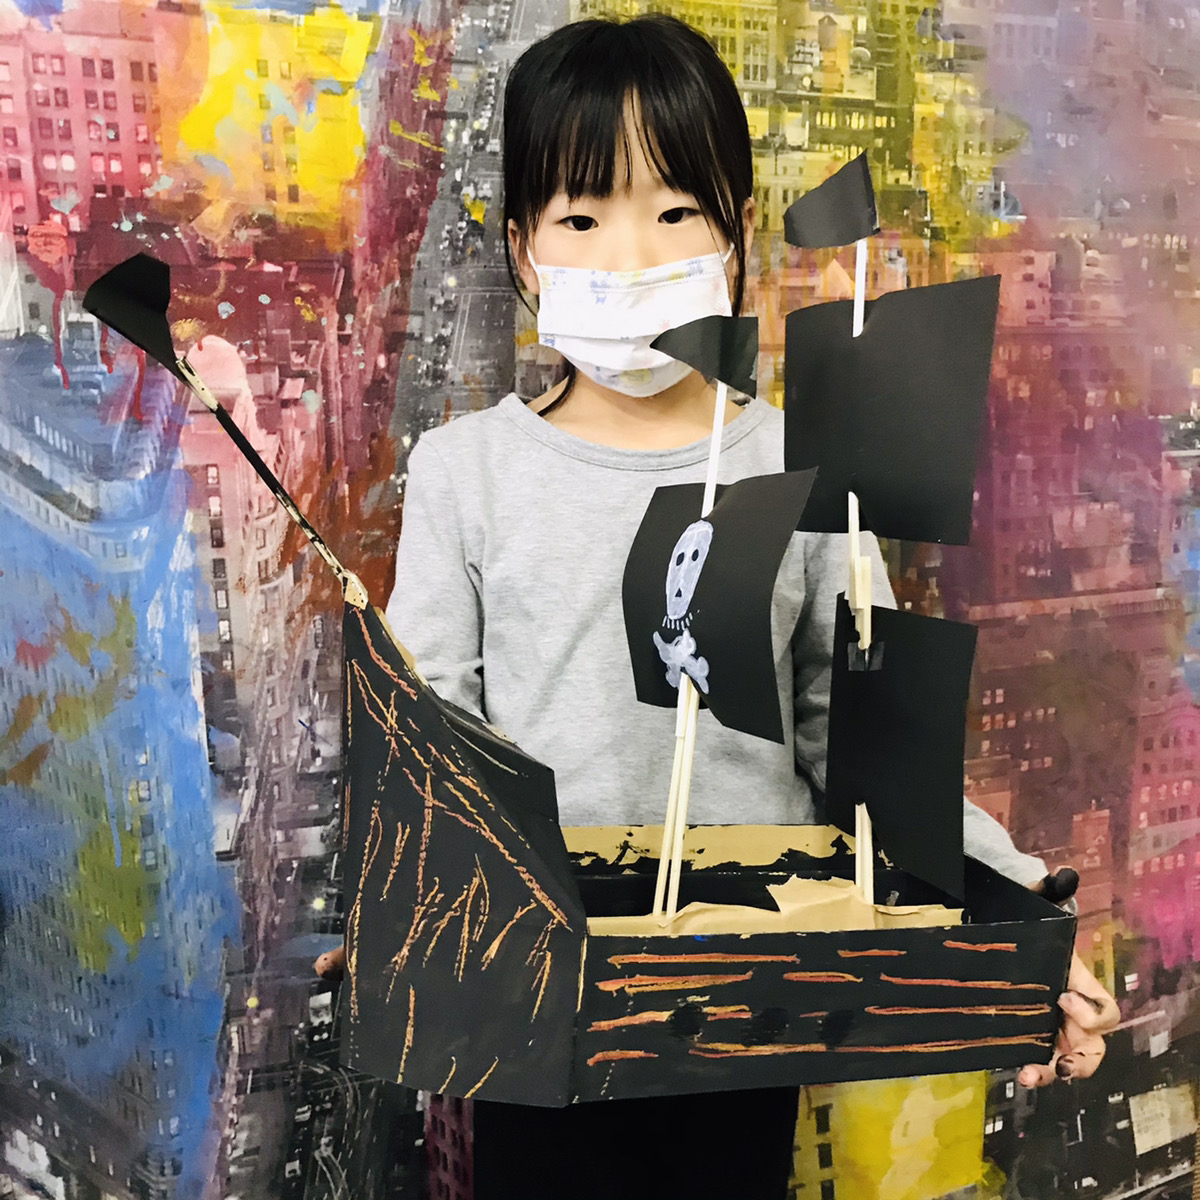 ワインのダンボール箱で作る海賊船 子供でも簡単パイレーツ工作 大阪のアートスクールモネスク